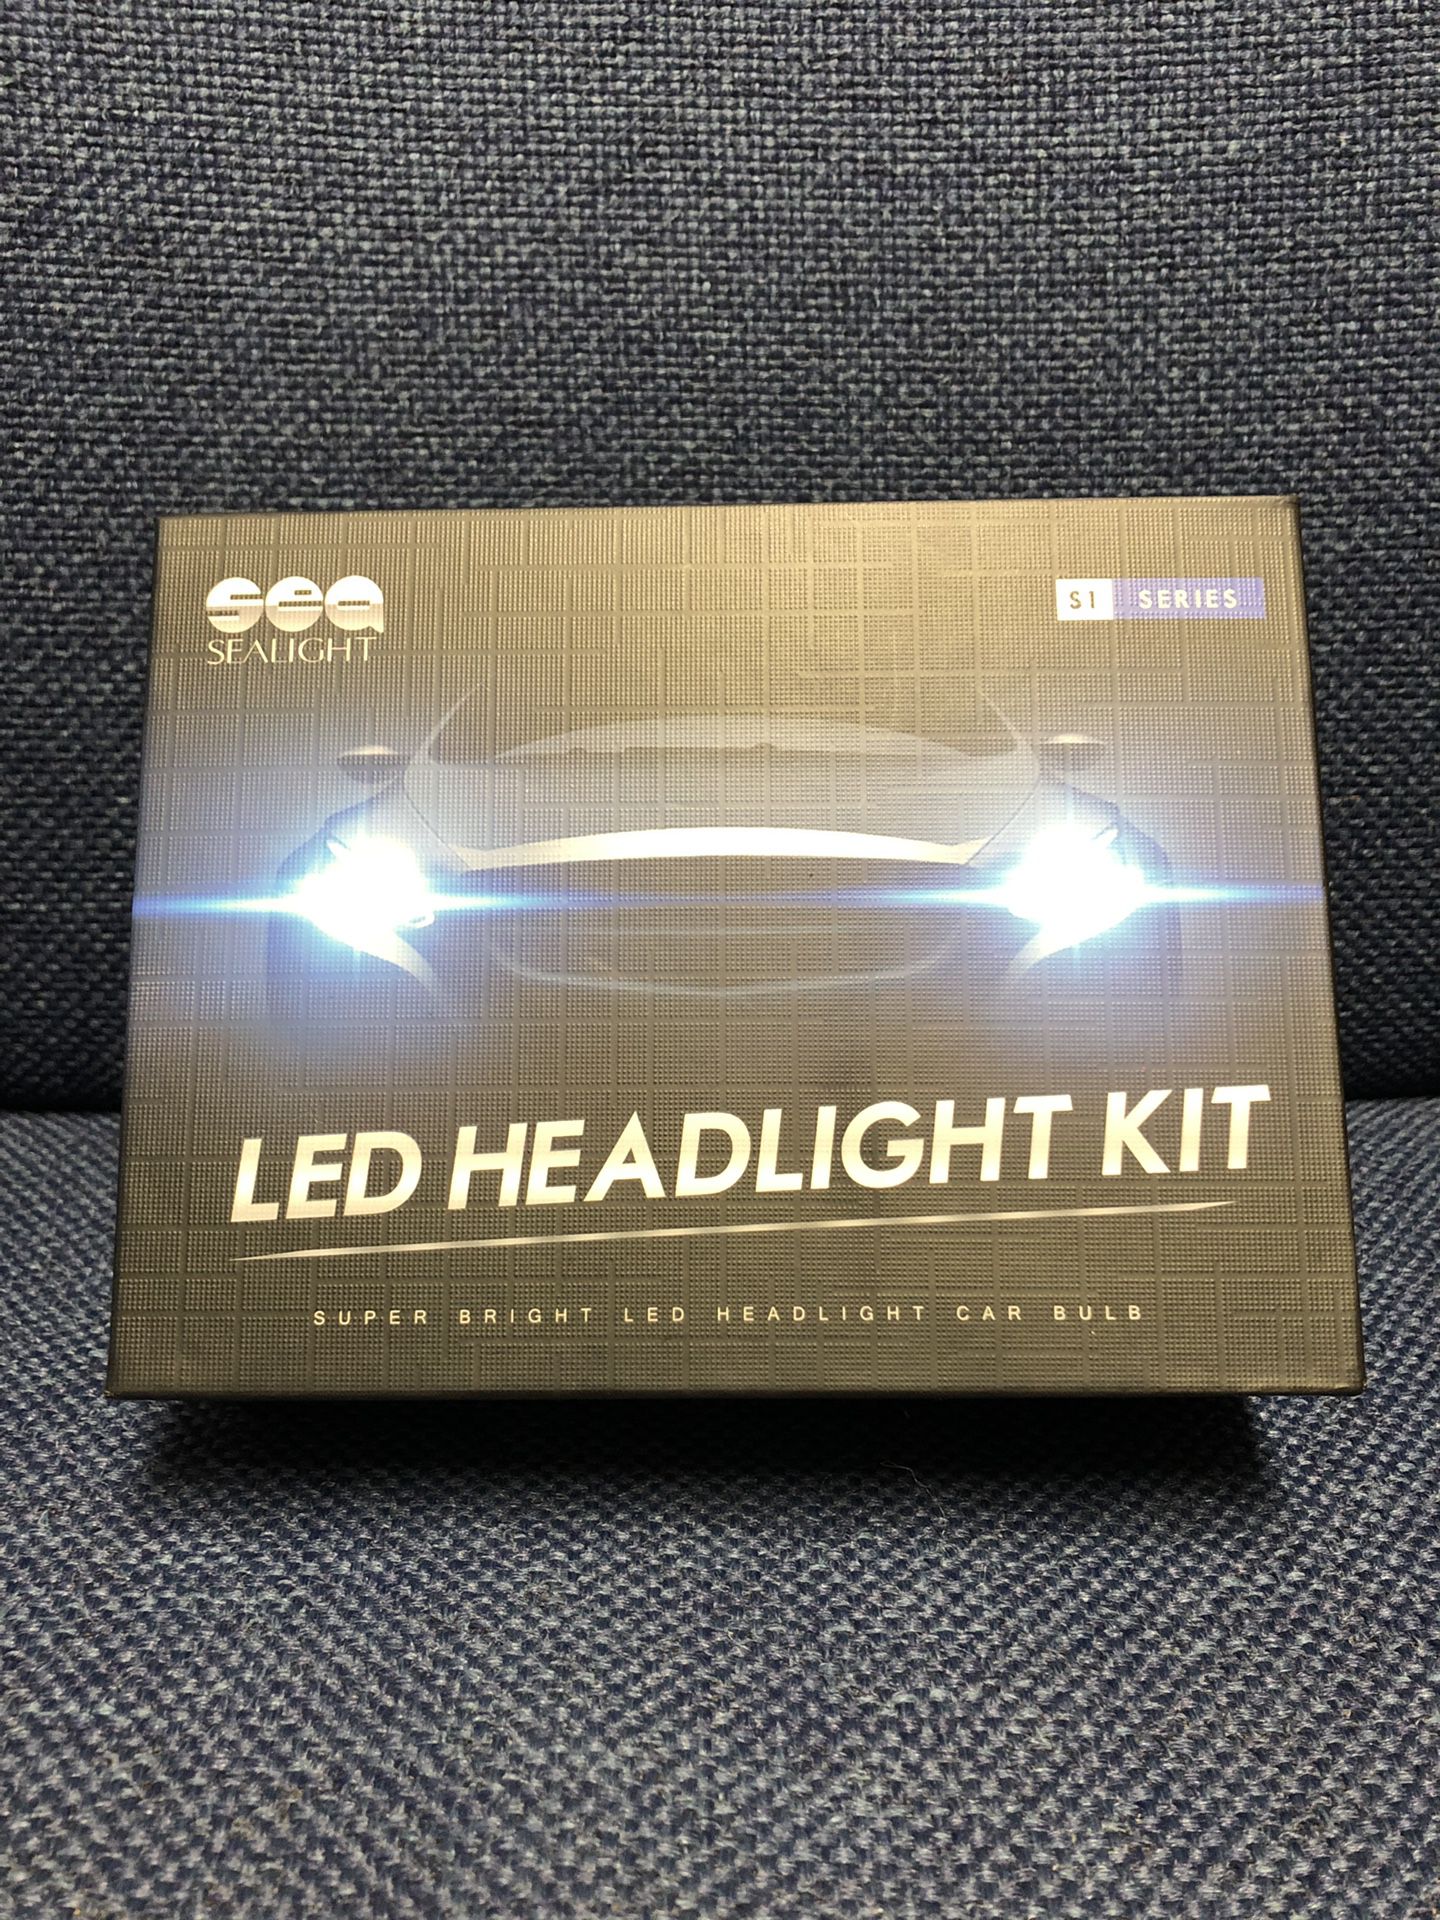 LED headlight kit